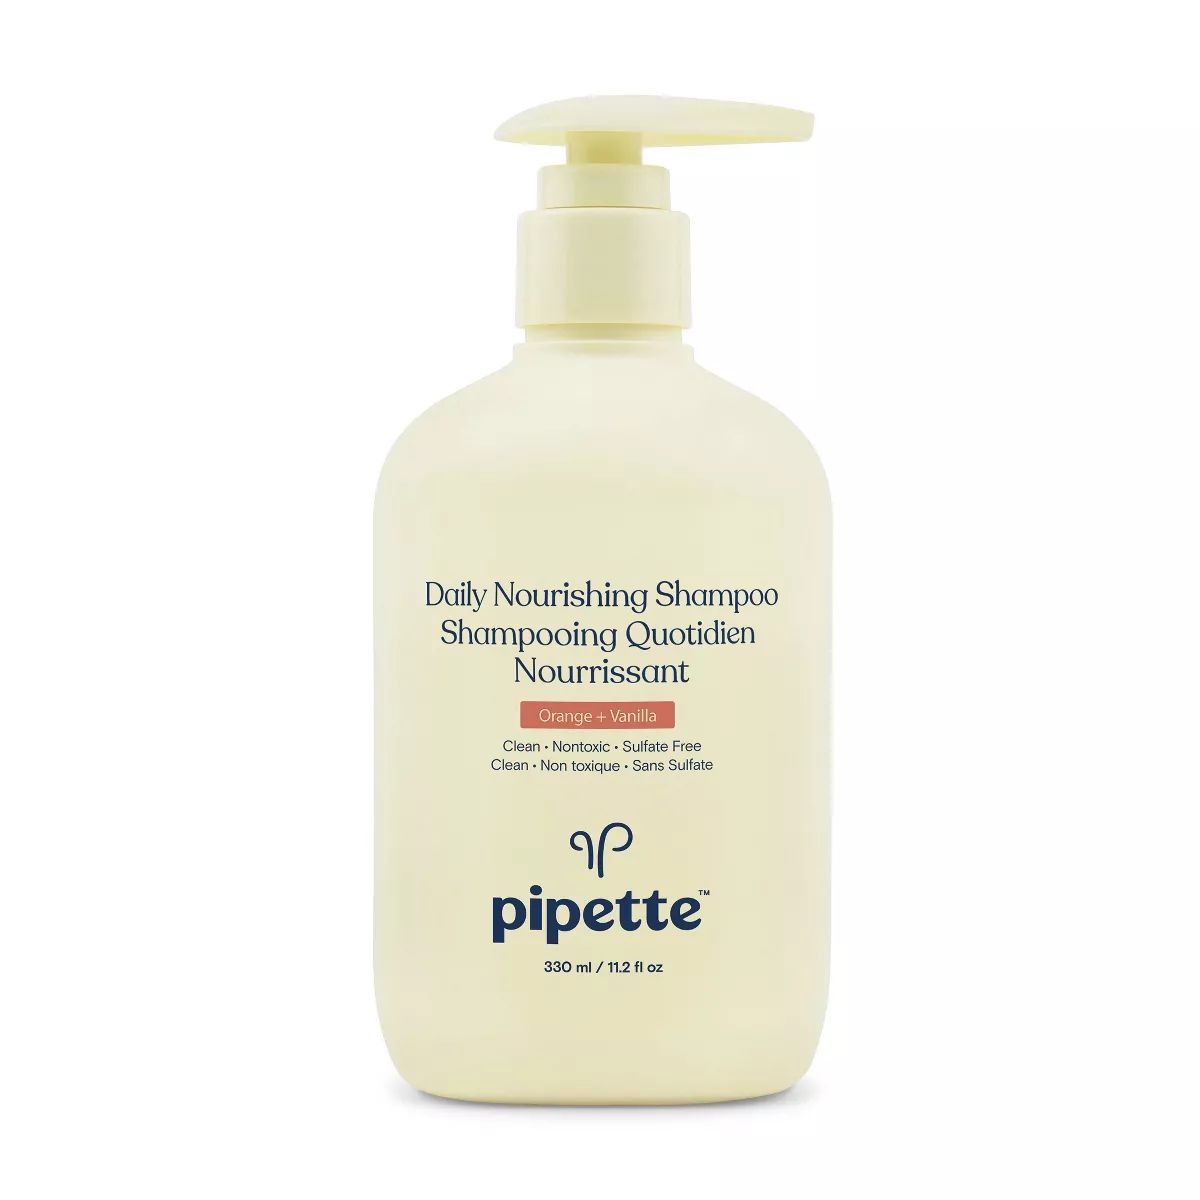 Pipette Daily Nourishing Shampoo - 11.2 fl oz | Target